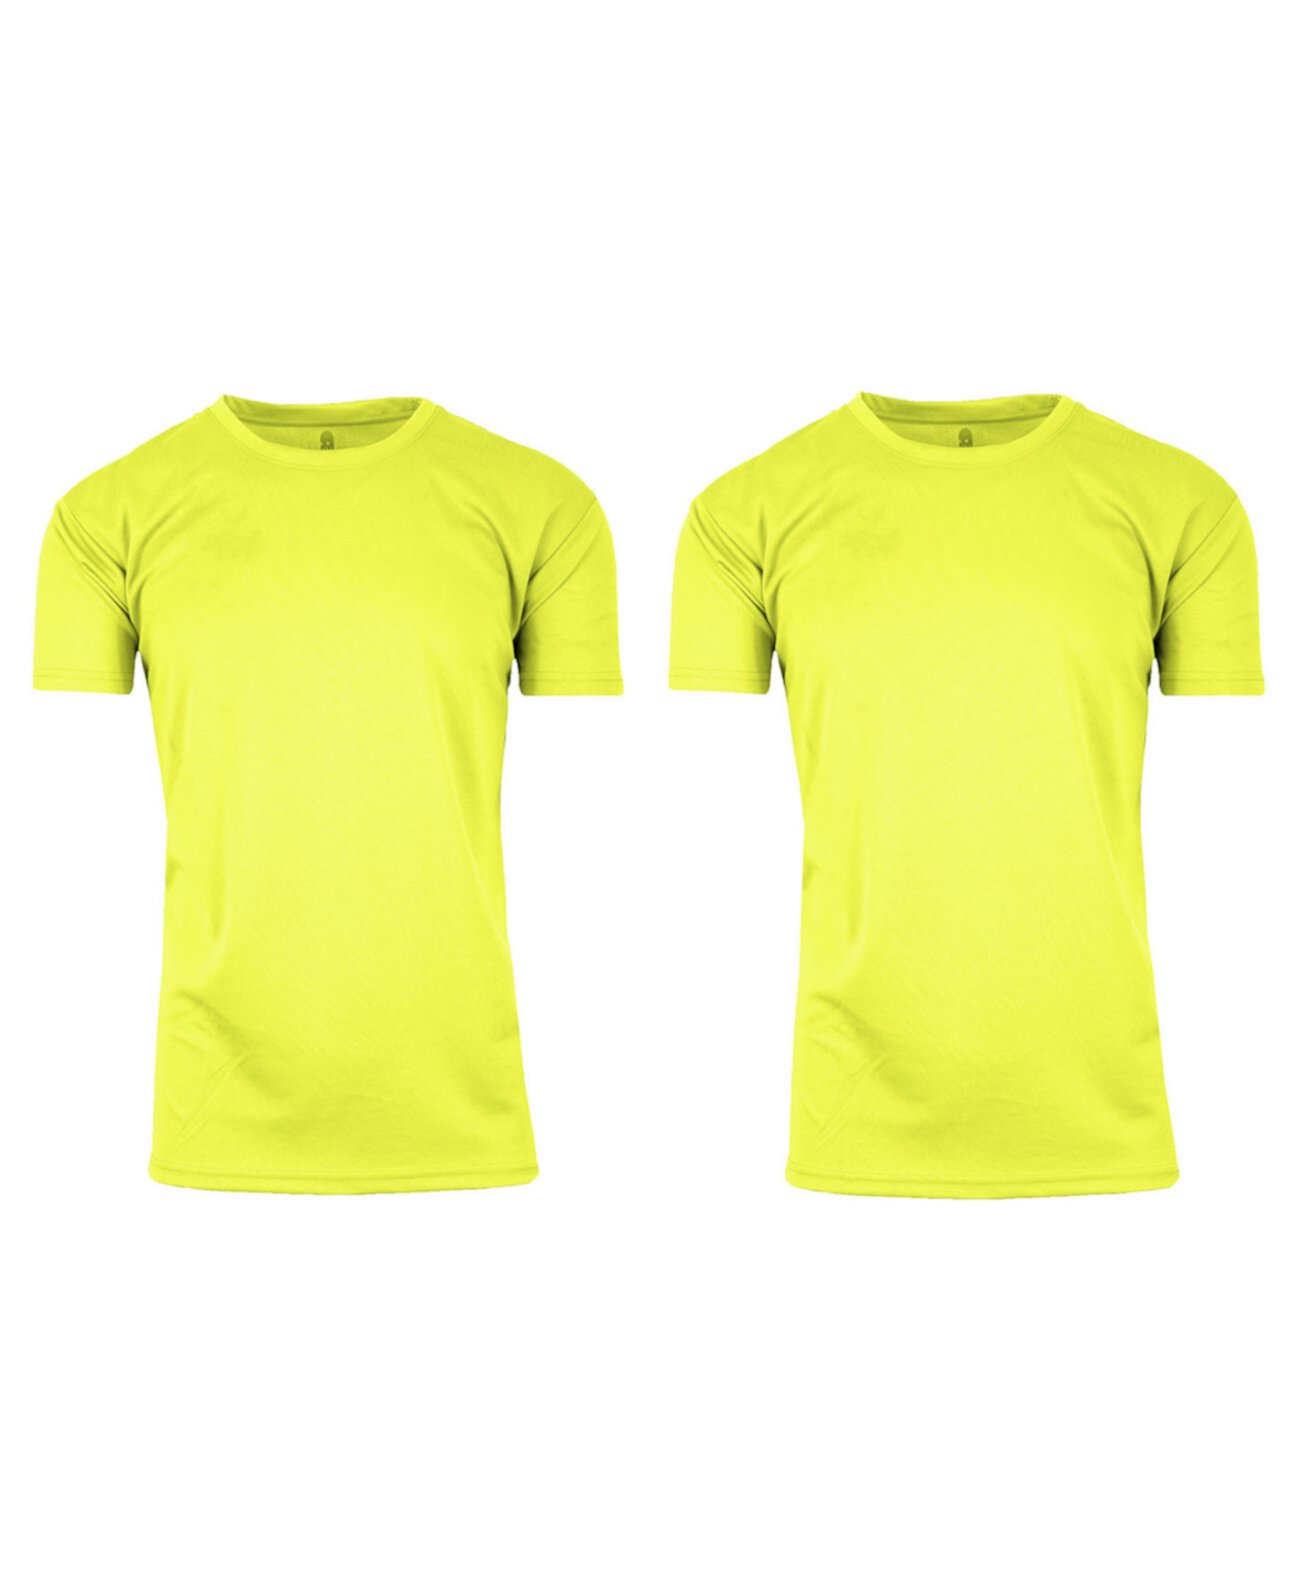 Мужская быстросохнущая влагоотводящая футболка с короткими рукавами и круглым вырезом — упаковка из 2 шт. Galaxy By Harvic